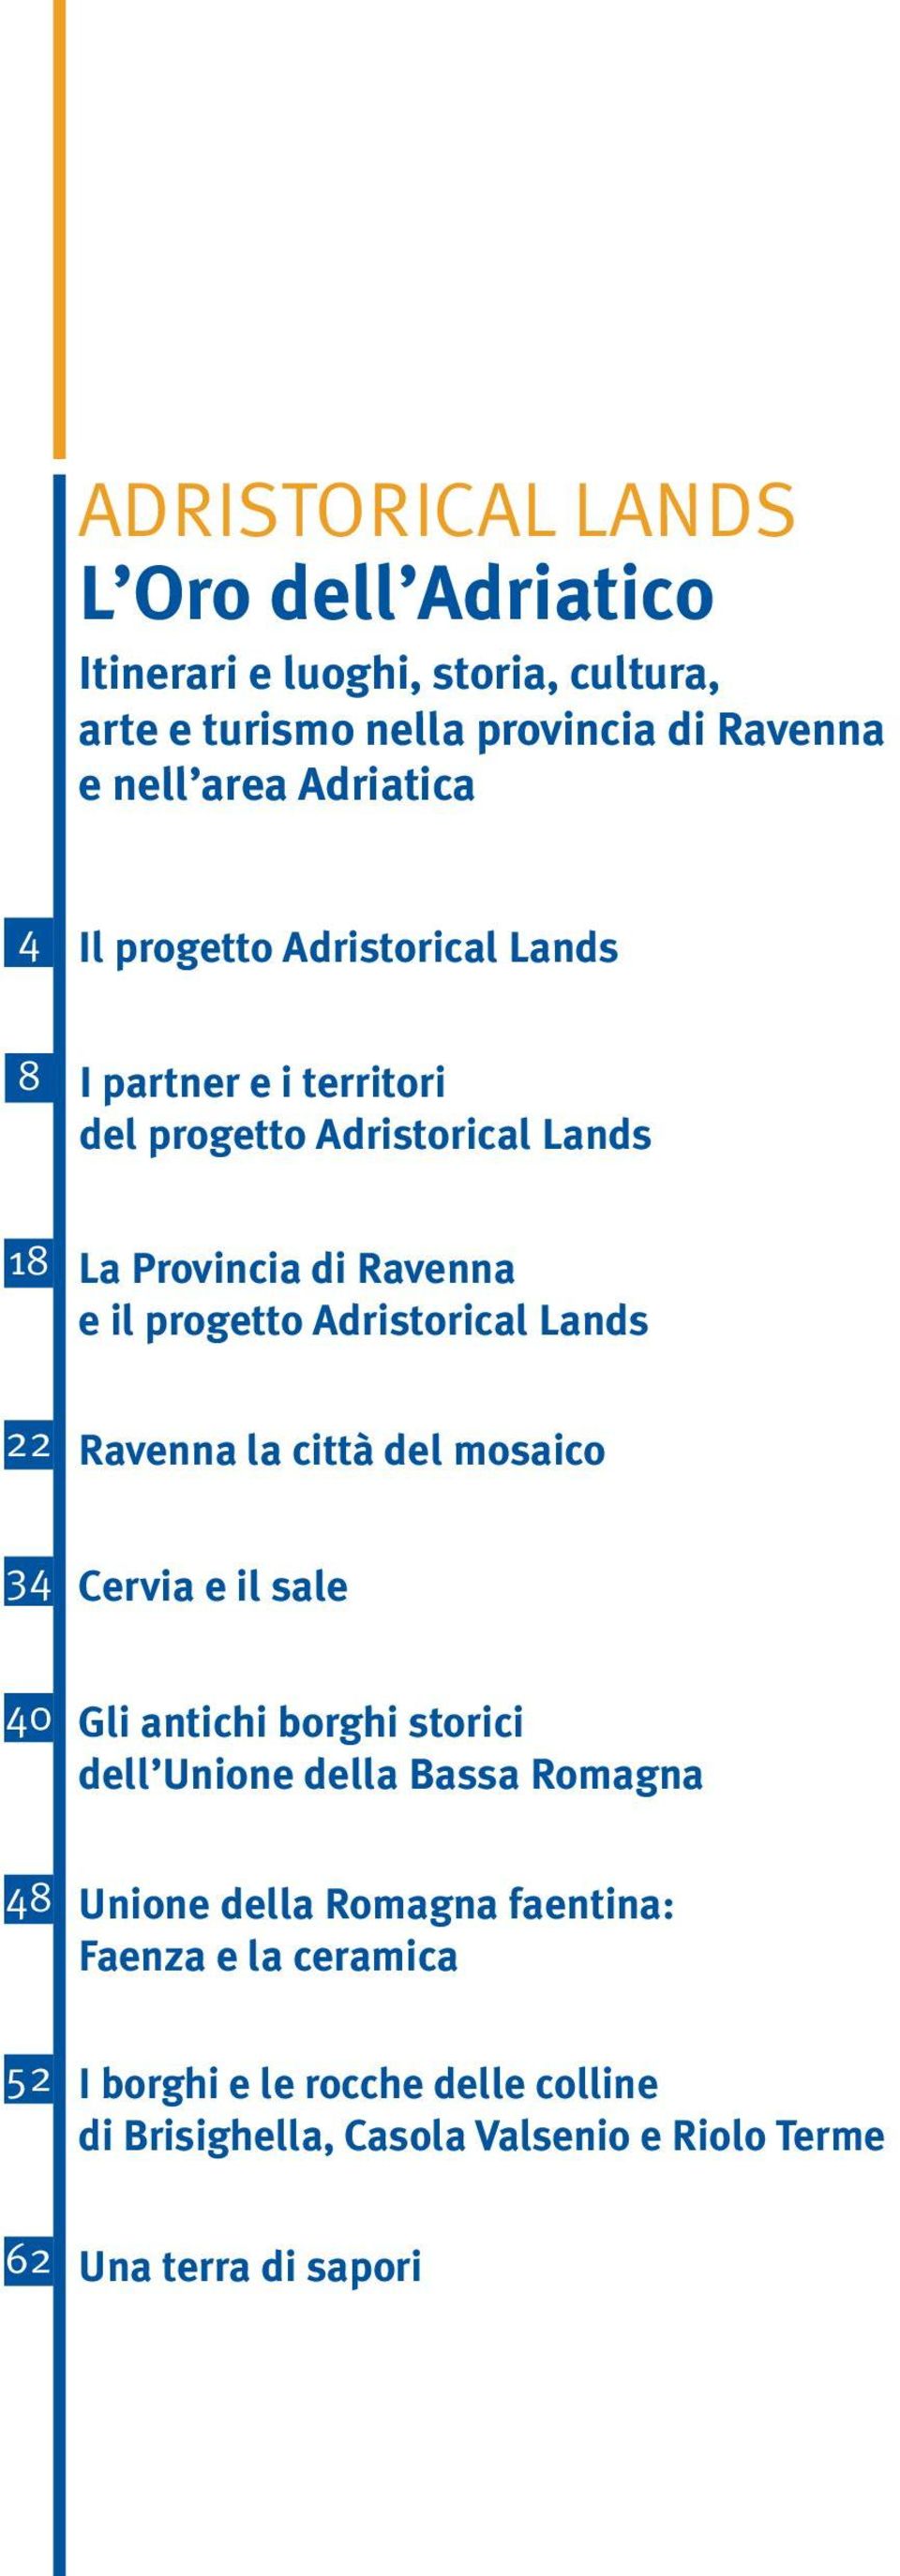 Adristorical Lands 22 Ravenna la città del mosaico 34 Cervia e il sale 40 Gli antichi borghi storici dell Unione della Bassa Romagna 48